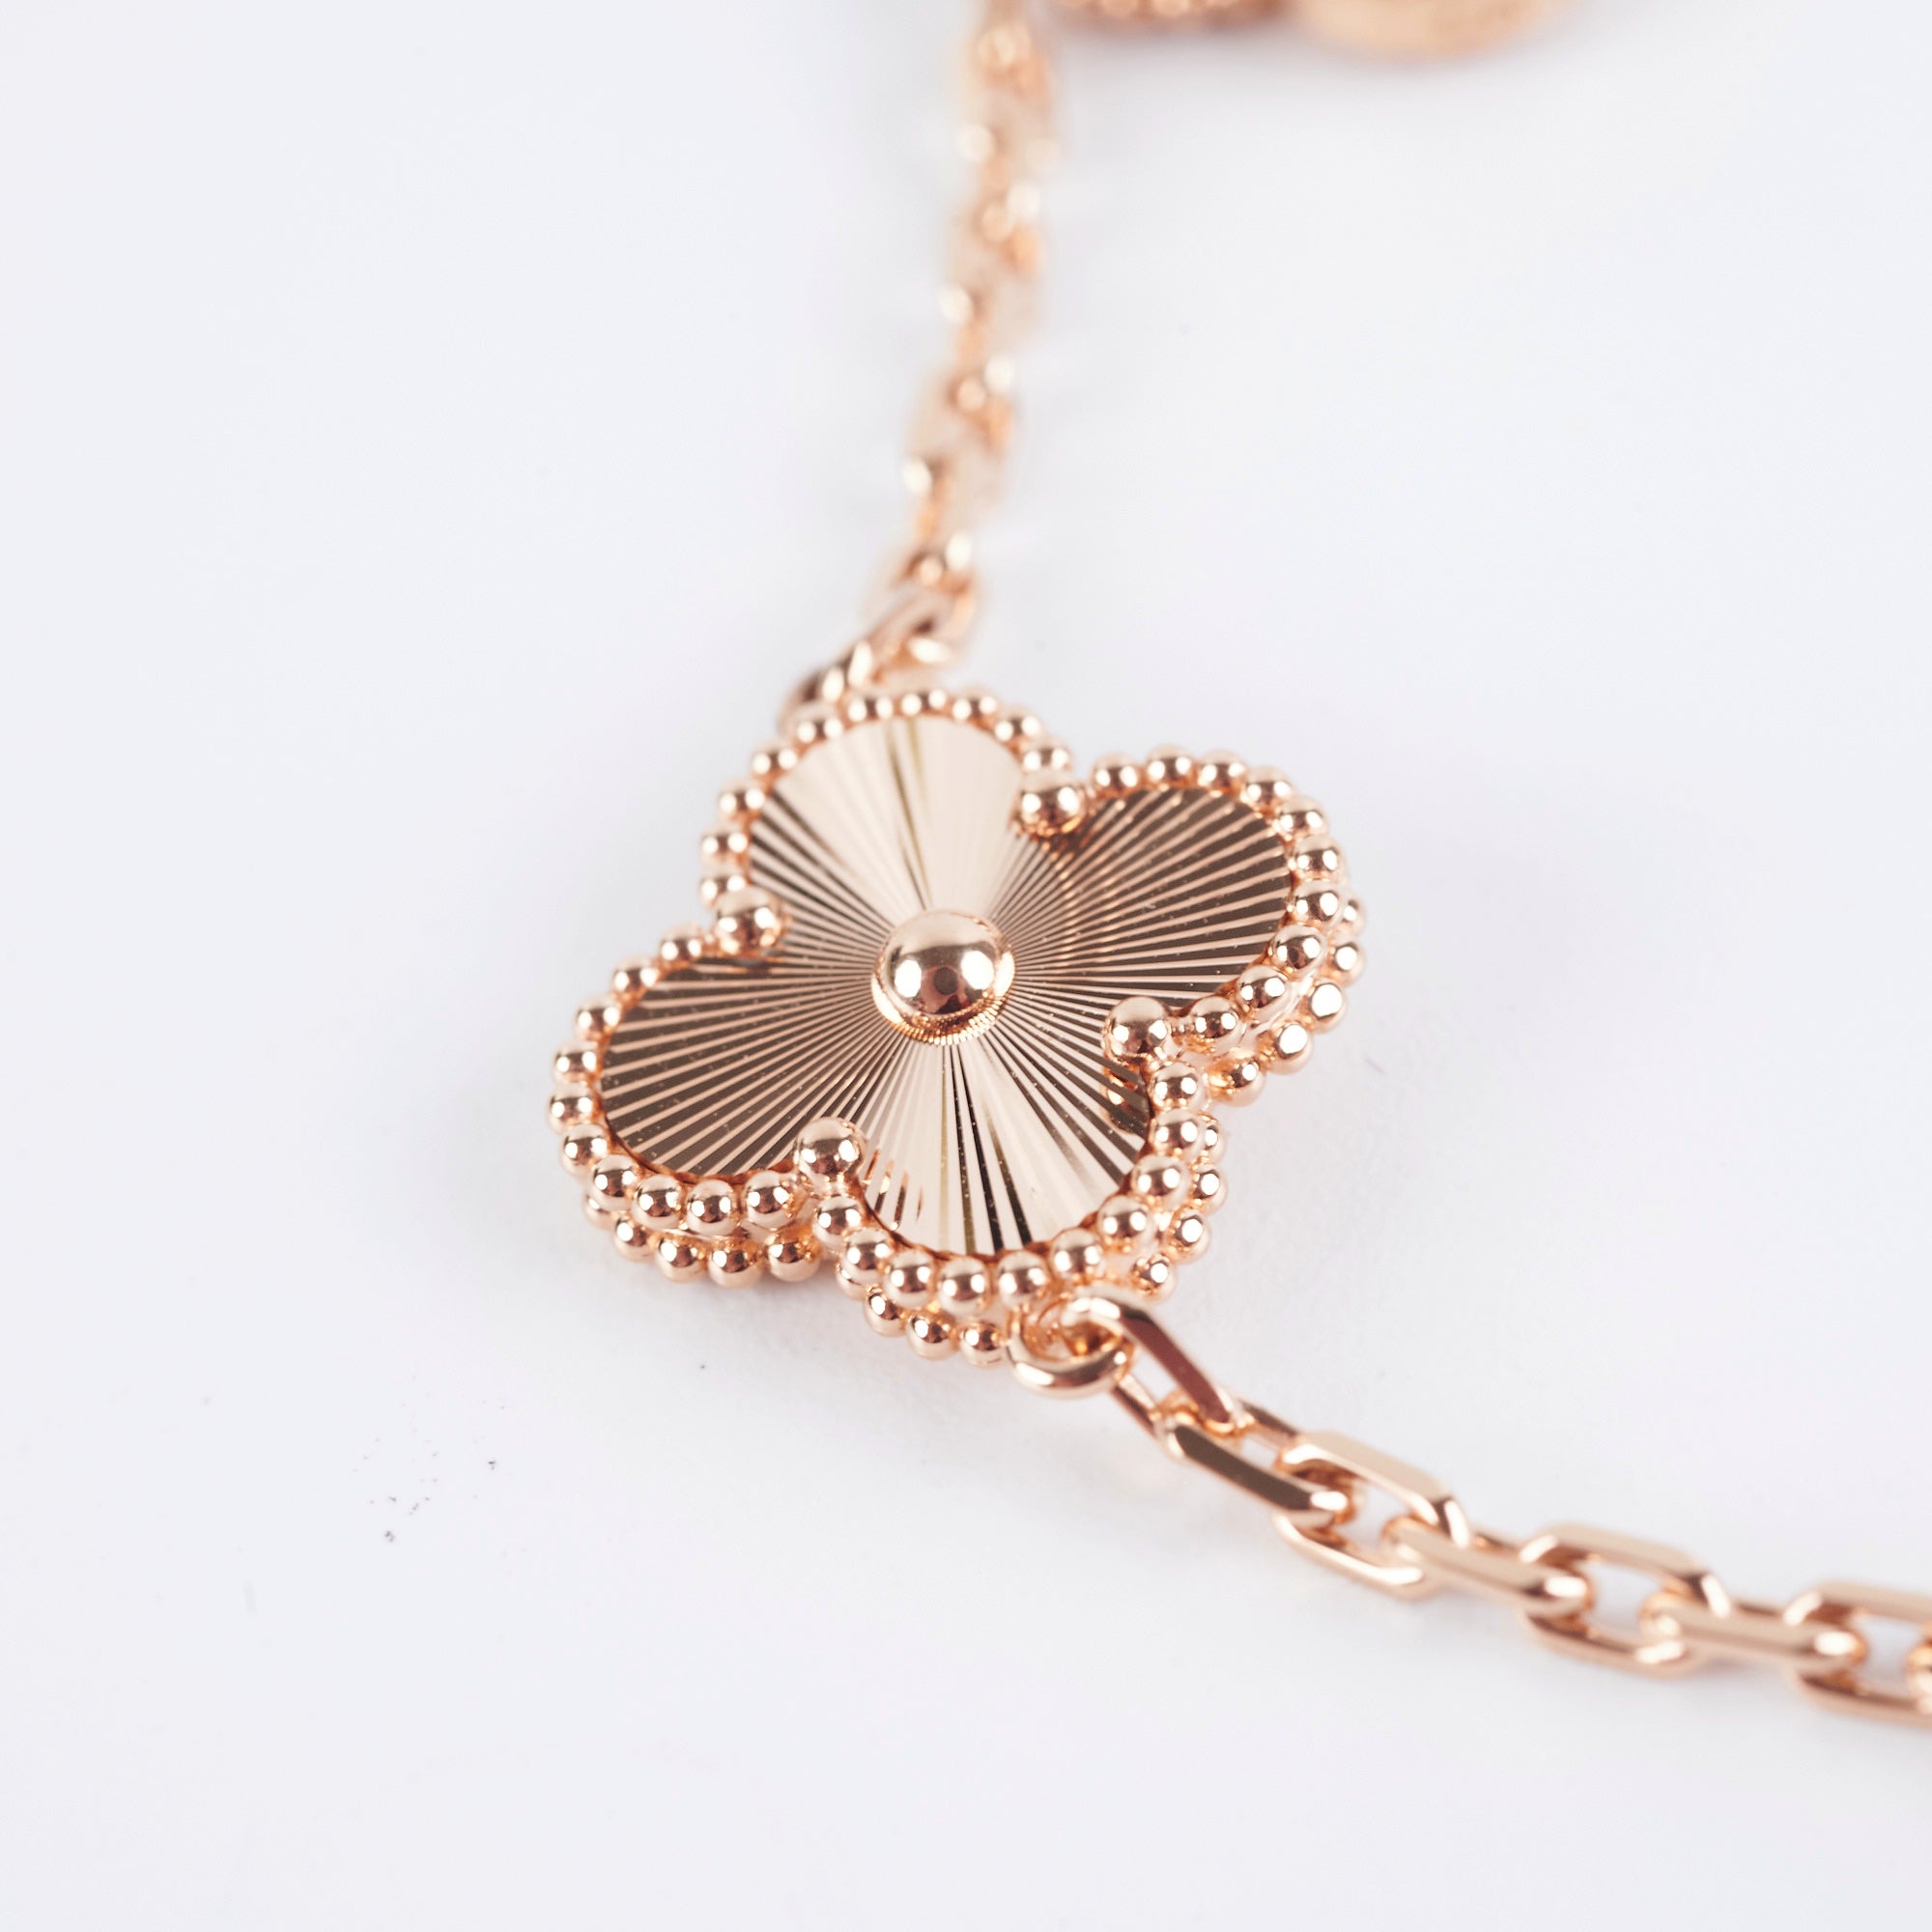 Van Cleef Arpels Vintage Alhambra Bracelet 5 Motifs Rose Gold with  Carnelian